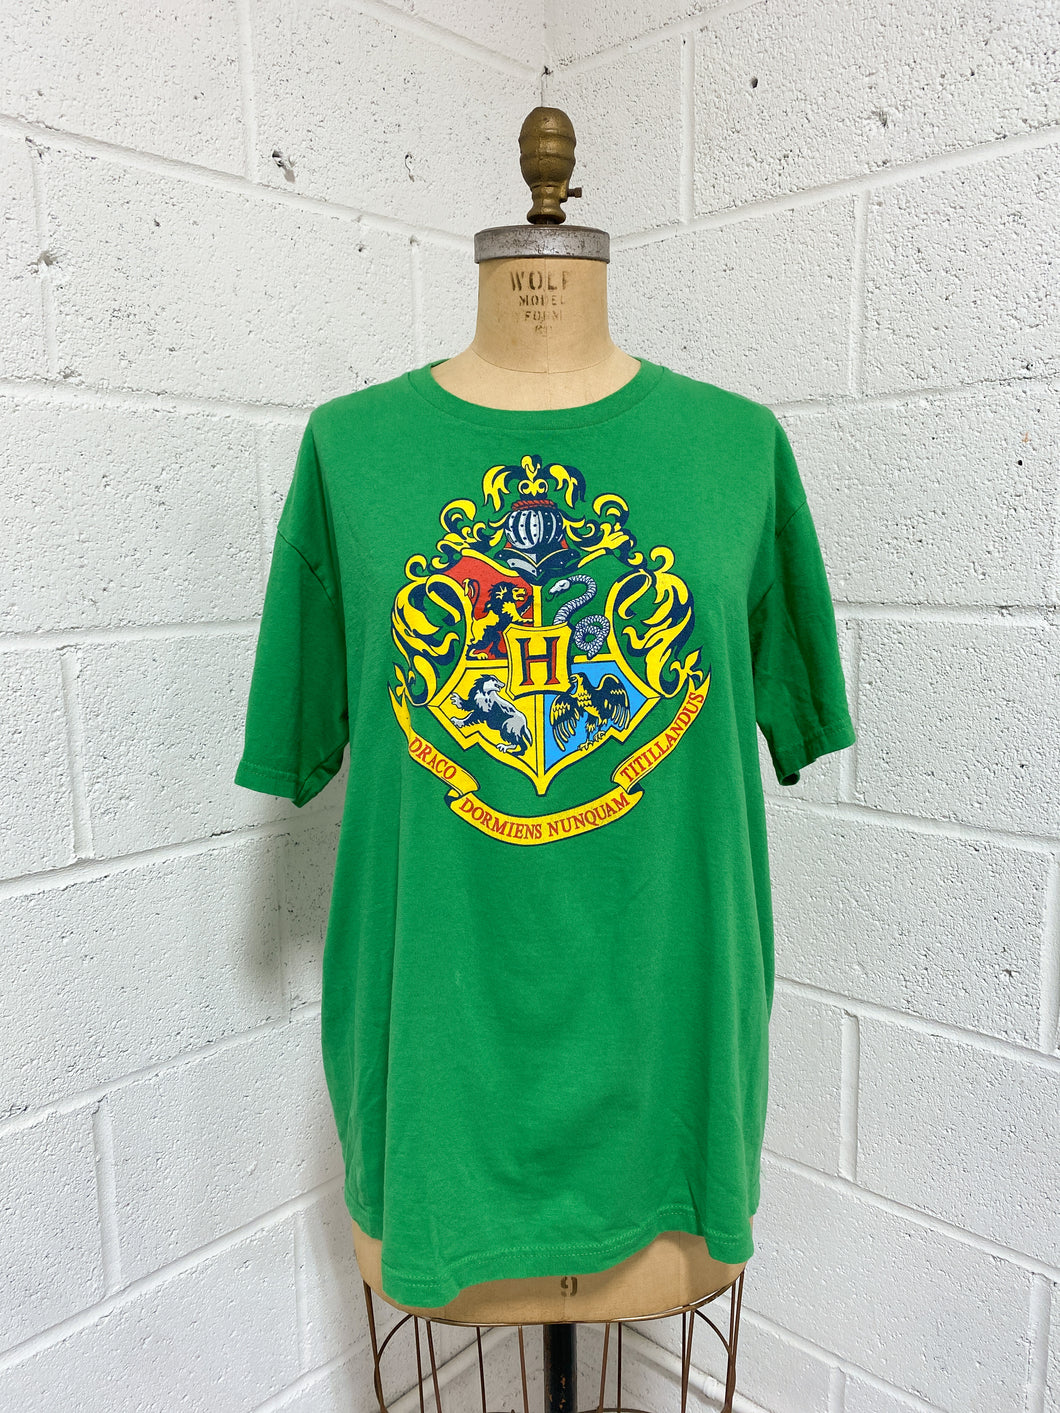 Harry Potter Wizarding World Green T-Shirt (L)